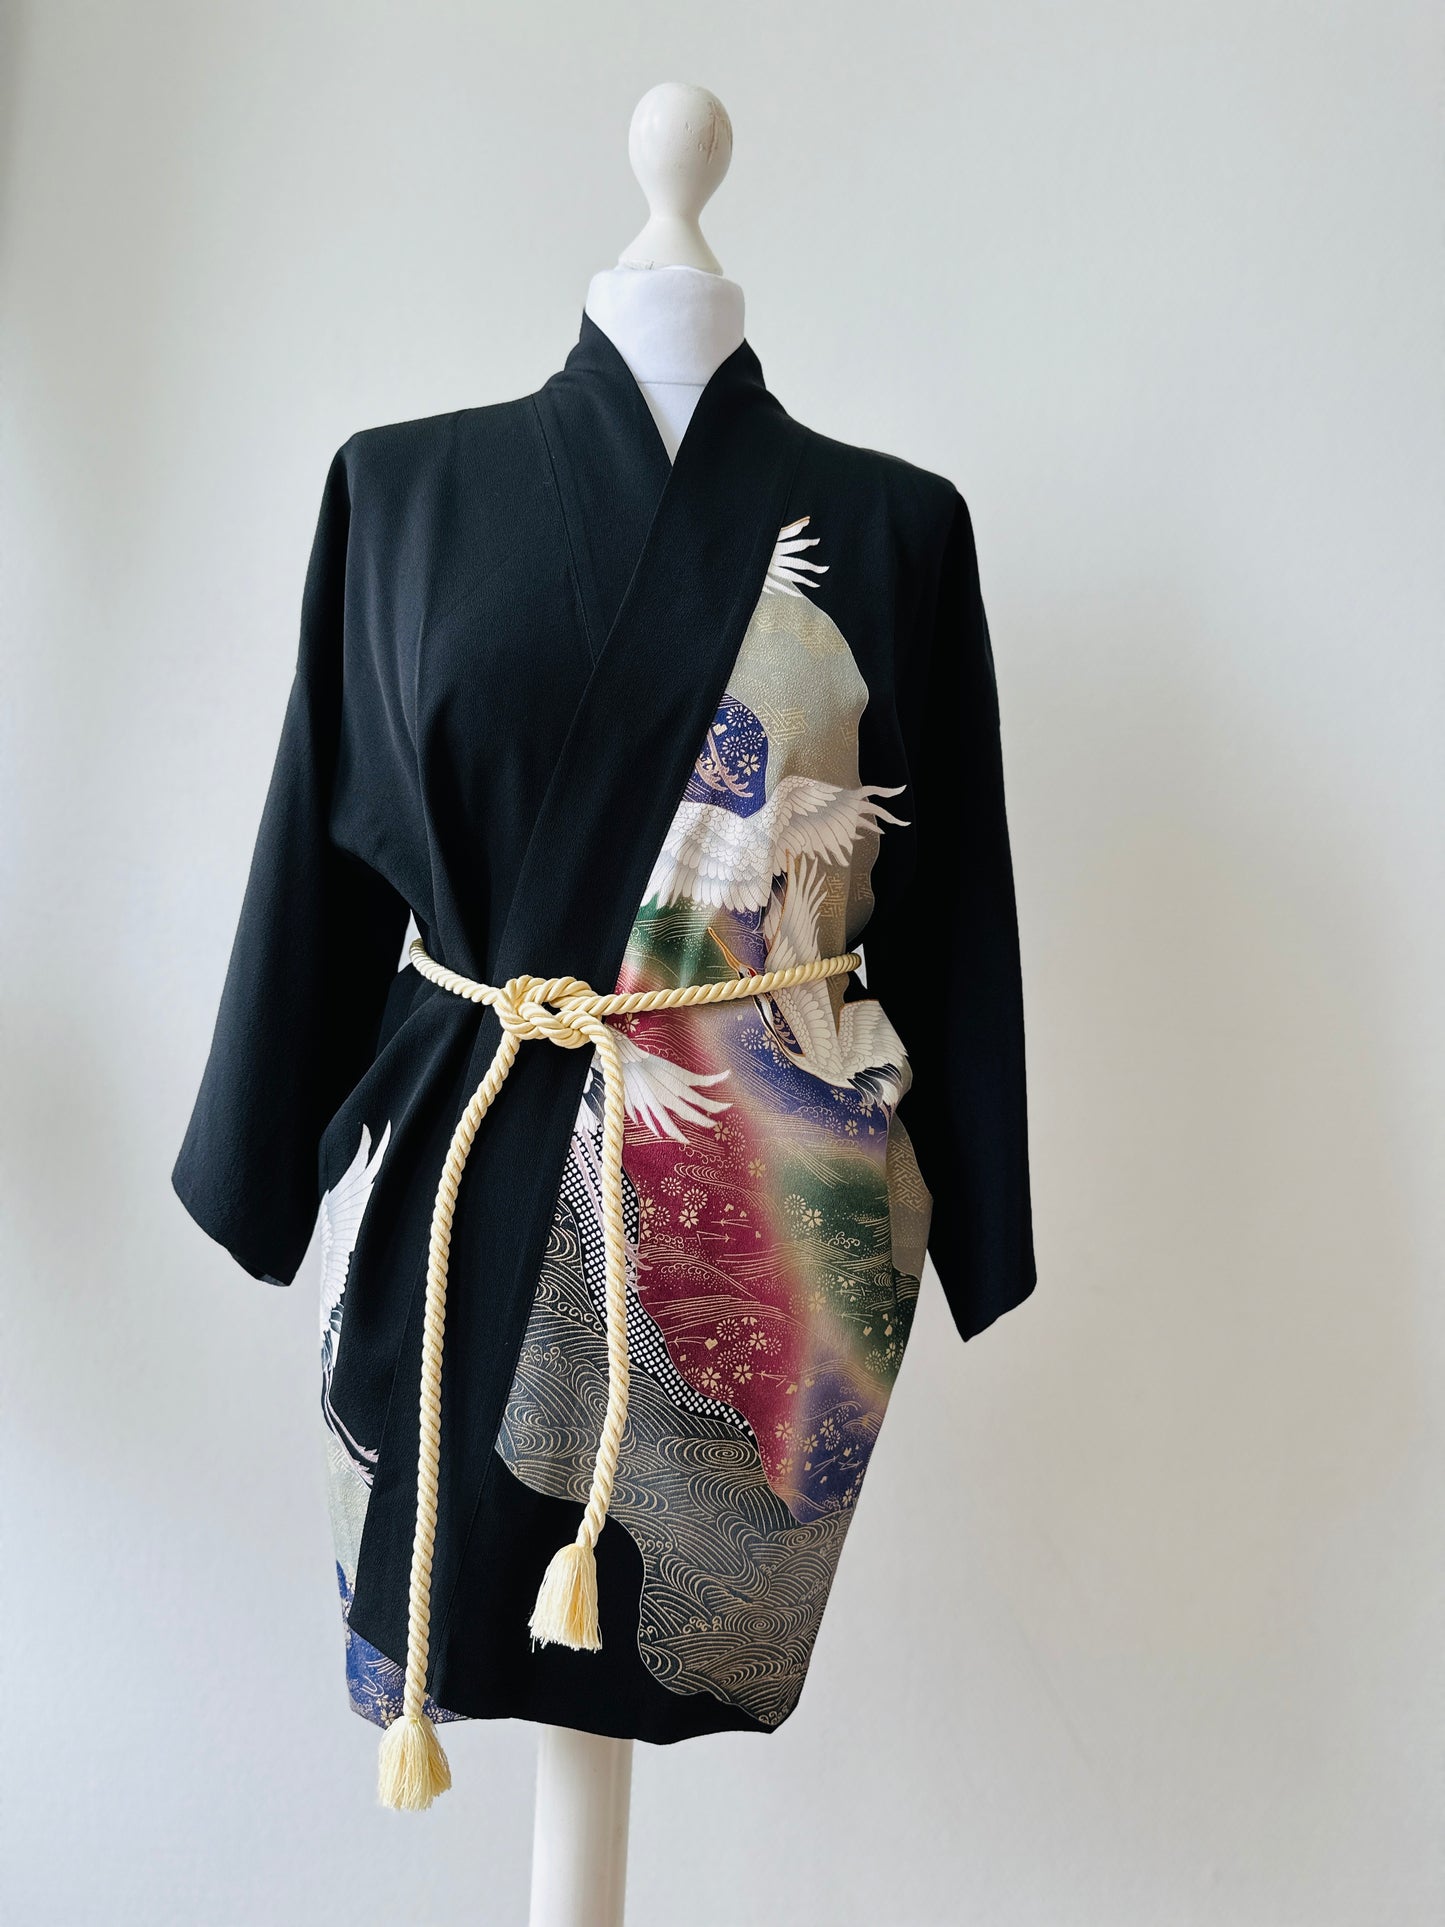 【Noir, grues en vol】 veste heureuse ＜ Excellent ・ Silk ＞ pour les hommes, pour les femmes, le kimono japonais, les vêtements unisexais japonais, l'unisexe, les cadeaux japonais, les dessins originaux